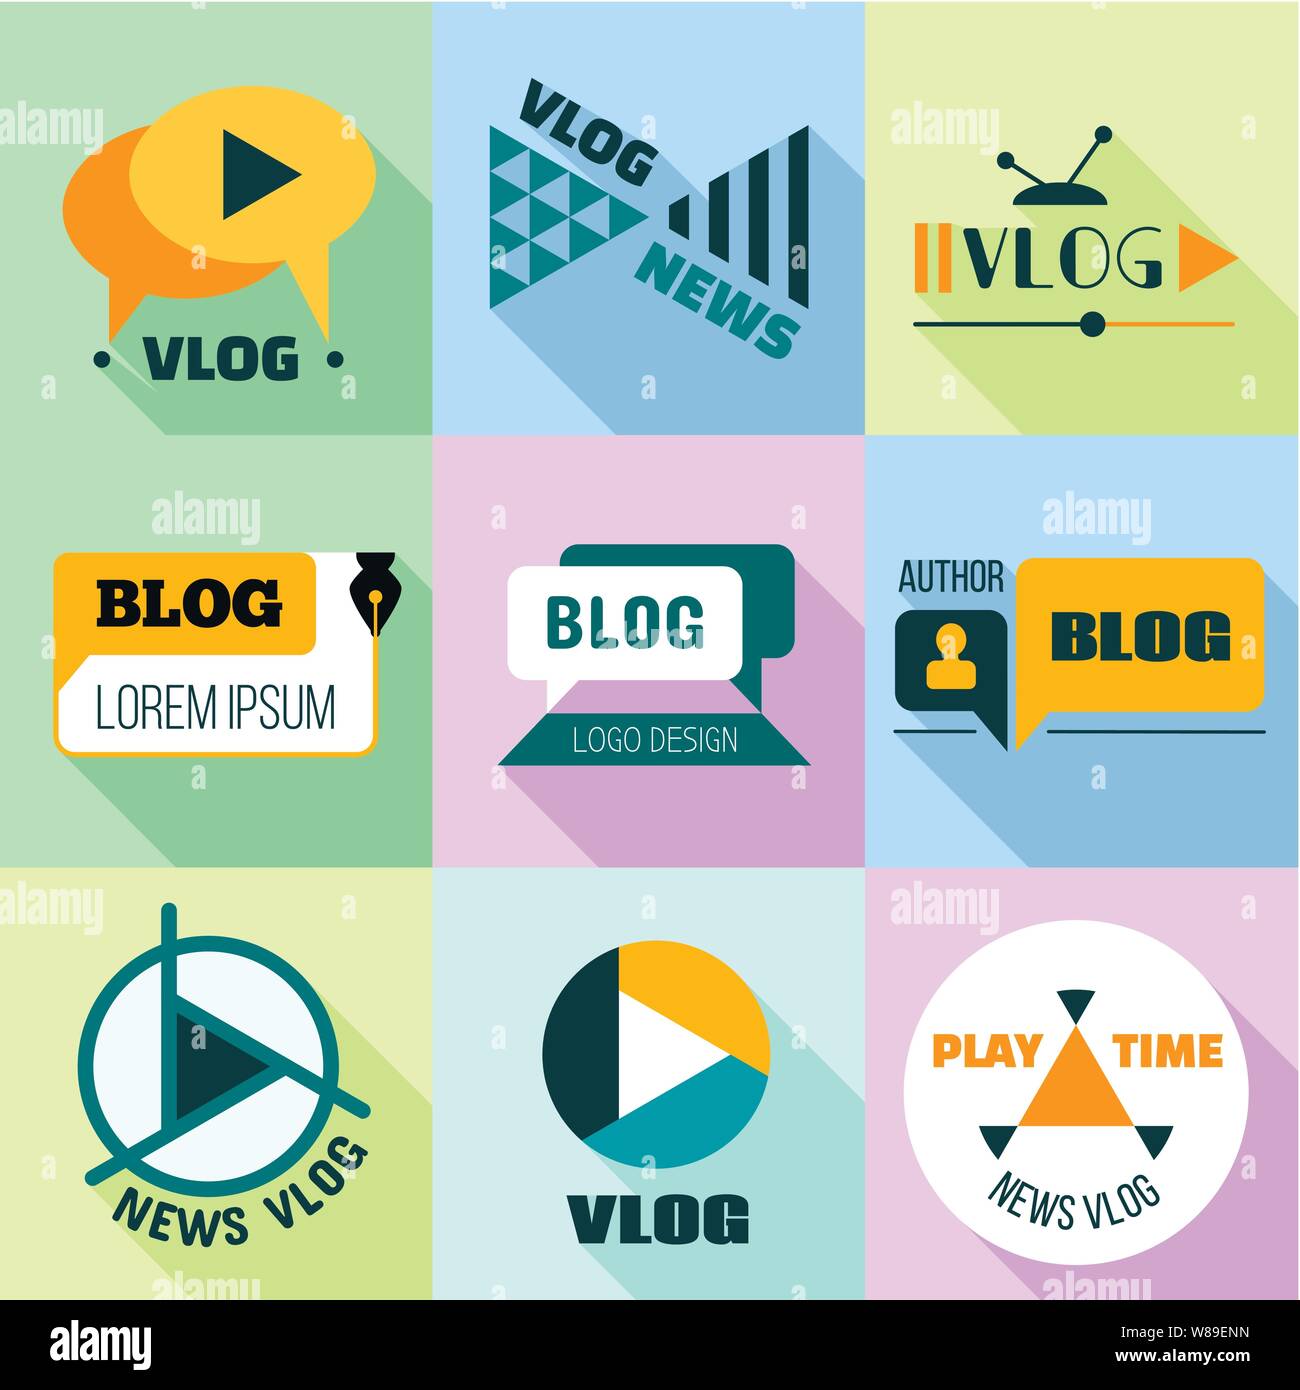 Đăng ký kênh tin tức Vlog là cách tuyệt vời để cập nhật thông tin nhanh chóng và hiệu quả về các sự kiện trong và ngoài nước. Hãy xem hình ảnh liên quan đến đăng ký kênh tin tức Vlog để tìm kiếm những thông tin hữu ích và chính xác. 